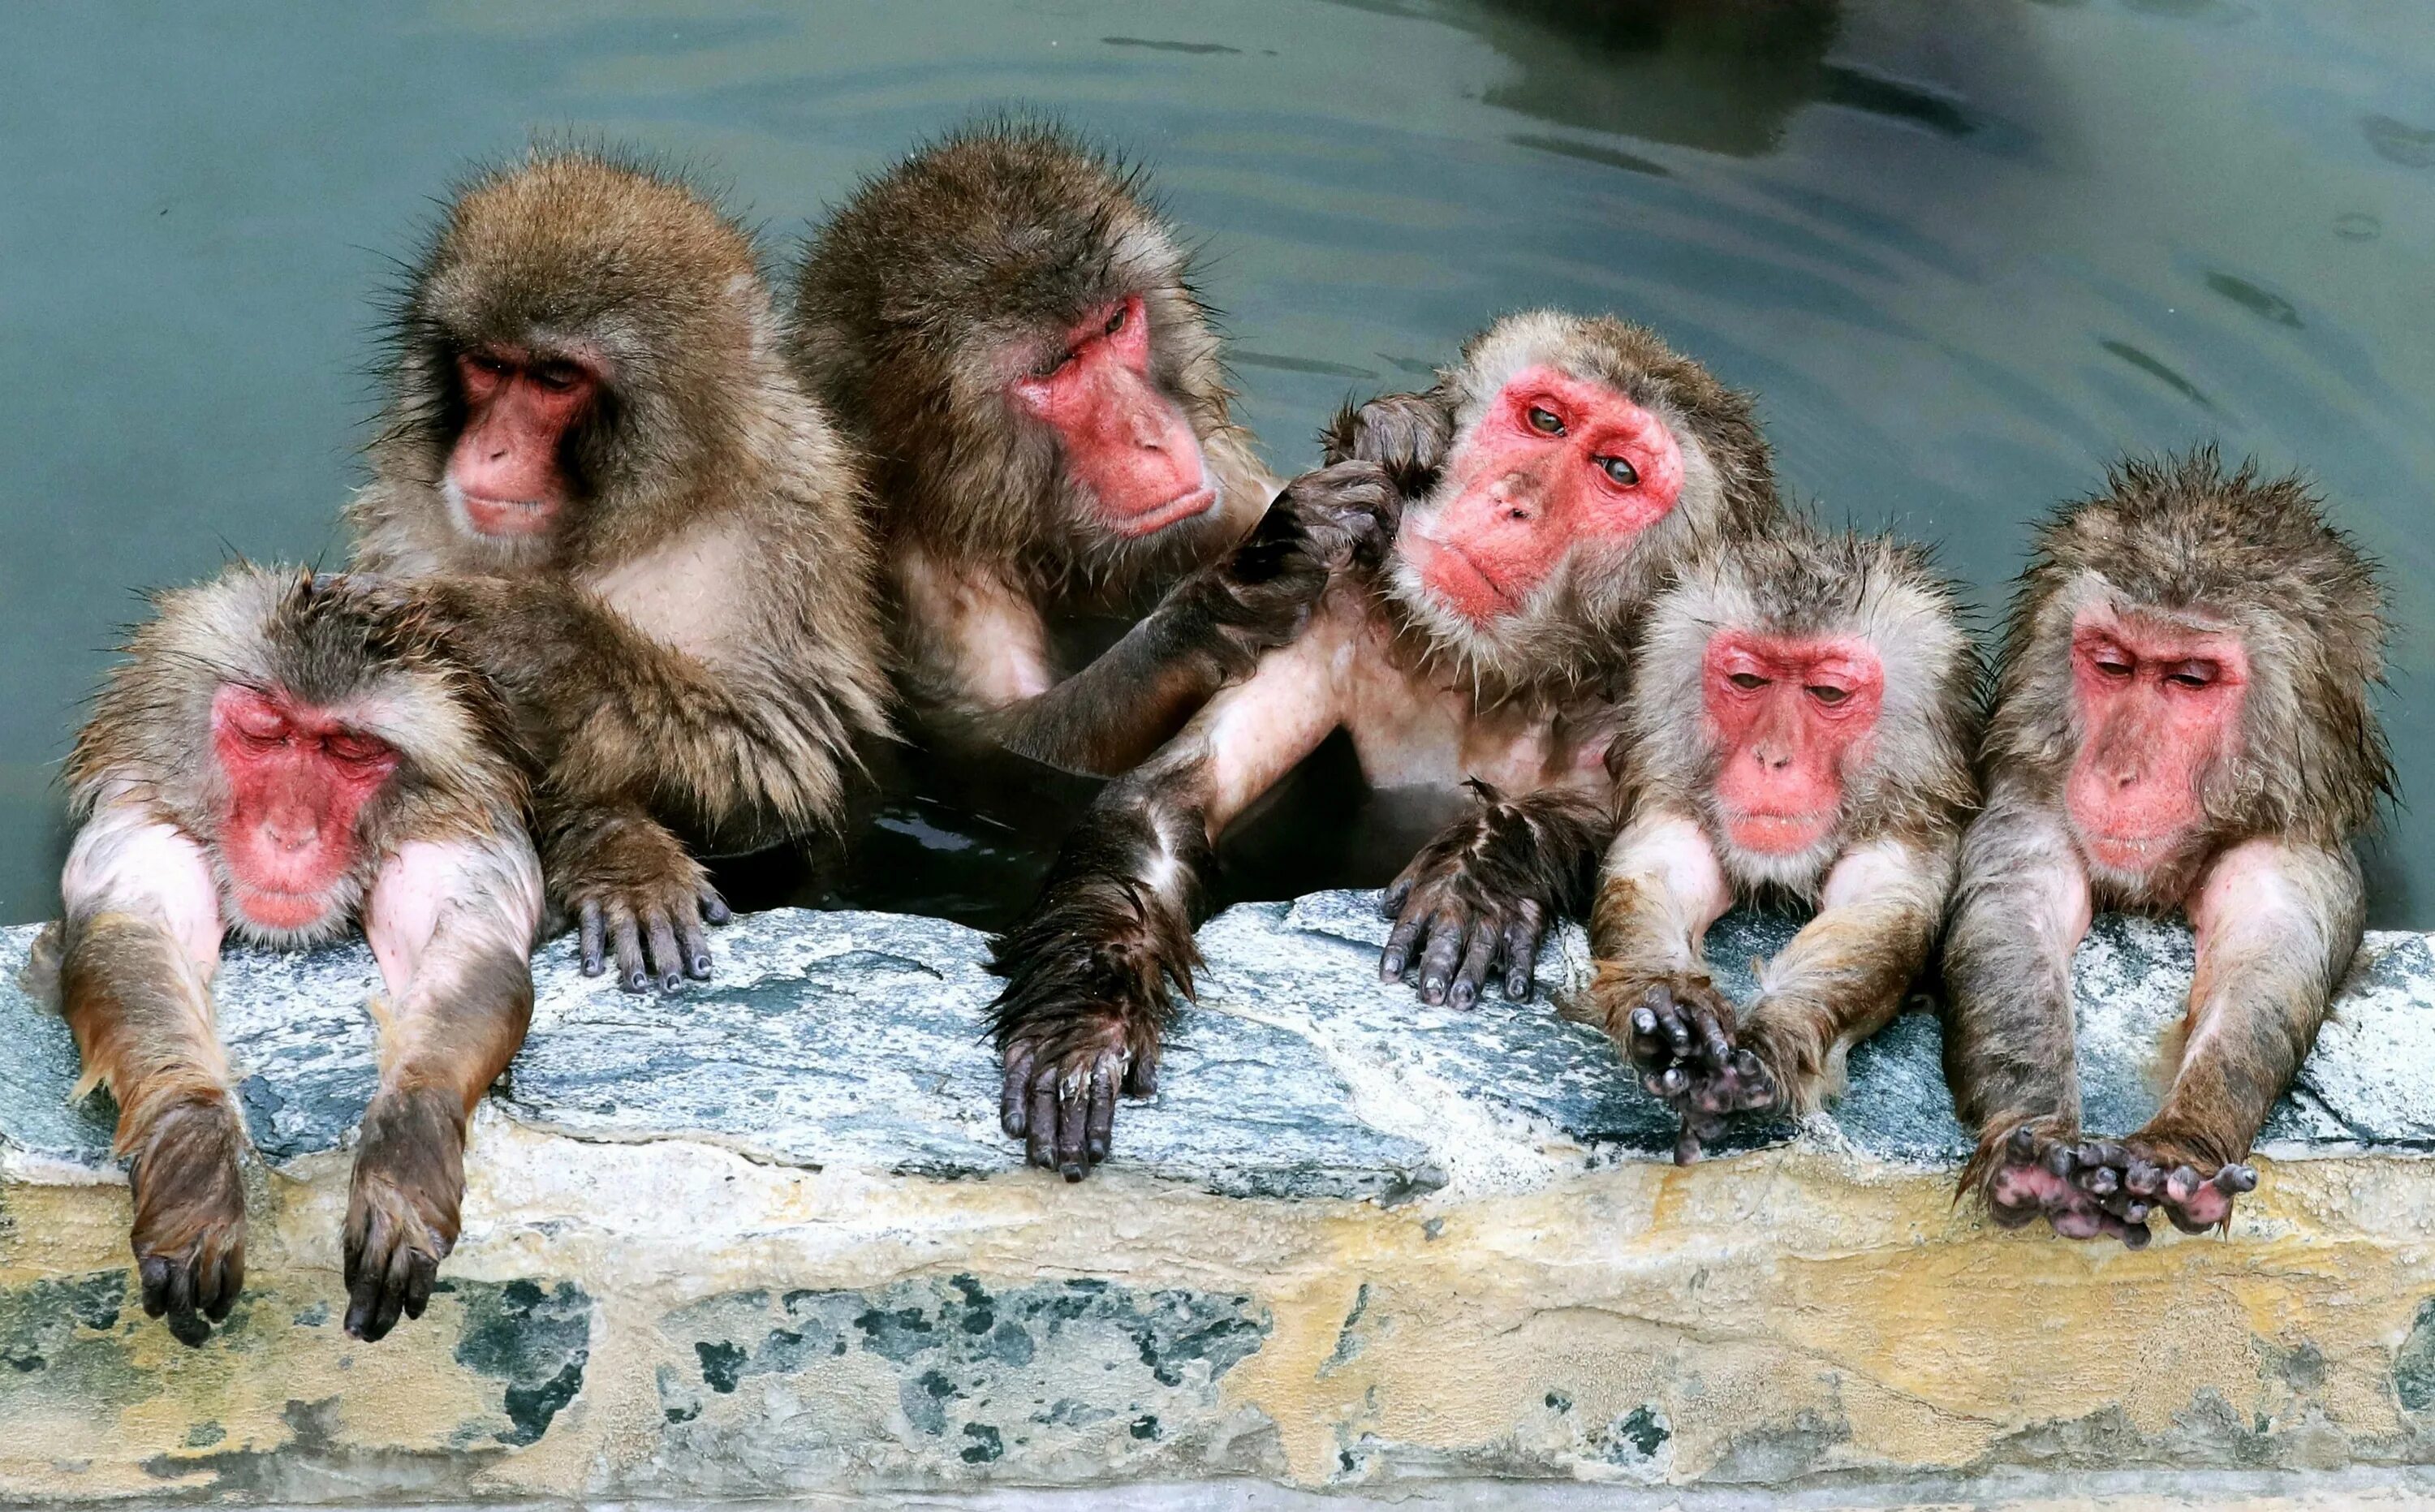 Обезьяна купается в теплой воде группа. Горячие источники Япония макаки. Японские макаки в теплых источниках. Обезьяны в термальных источниках Японии. Японские обезьяны.